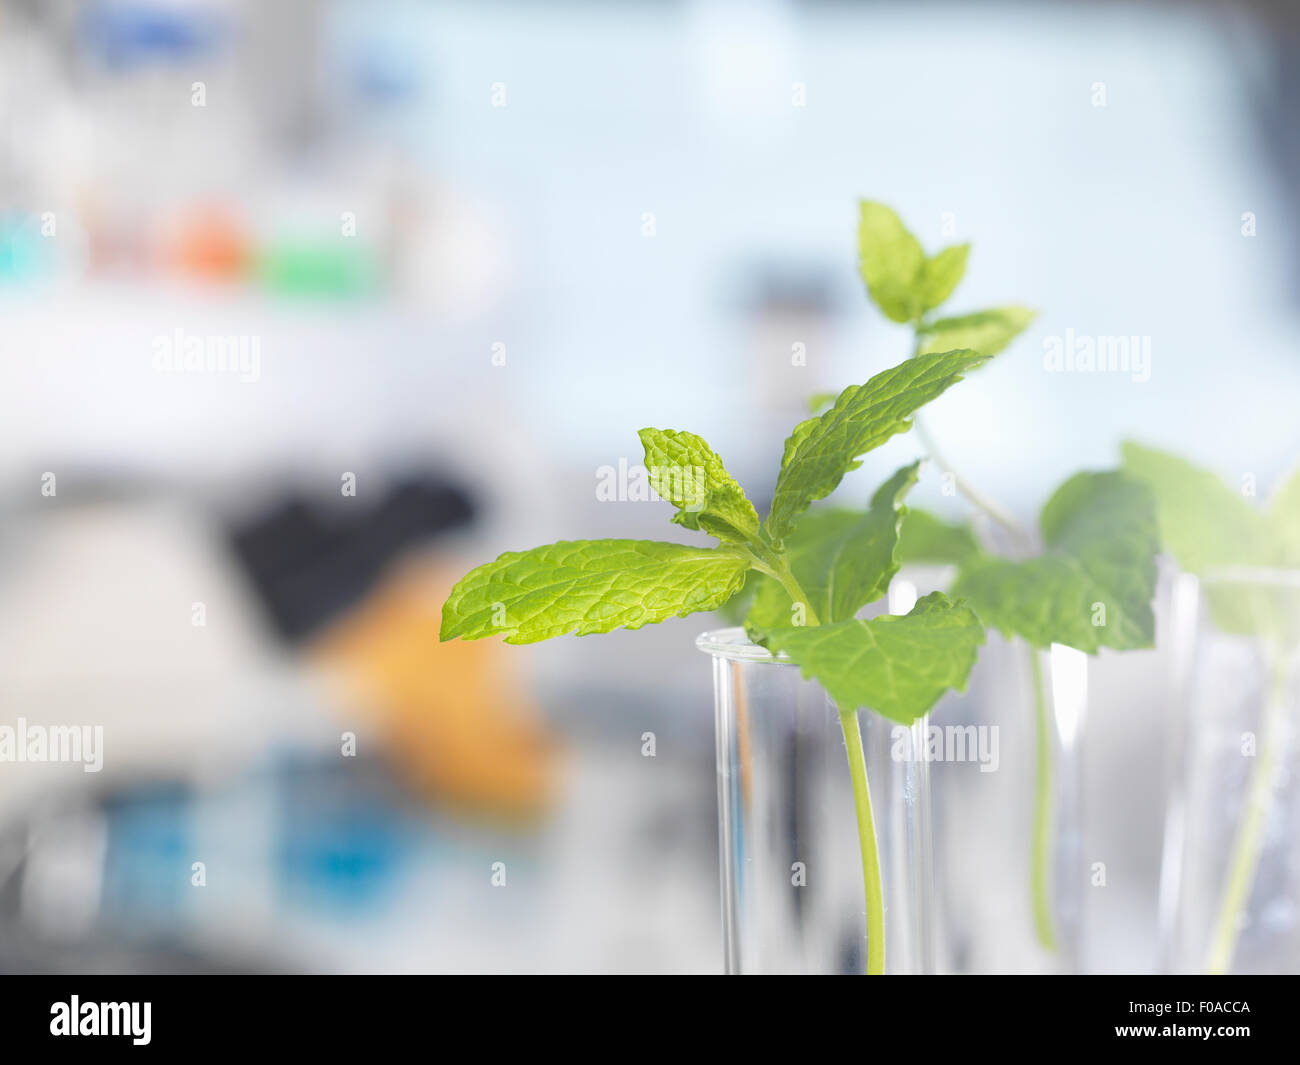 Las plantas contenidas en tubos de ensayo en espera de pruebas en un laboratorio de biotecnología Foto de stock